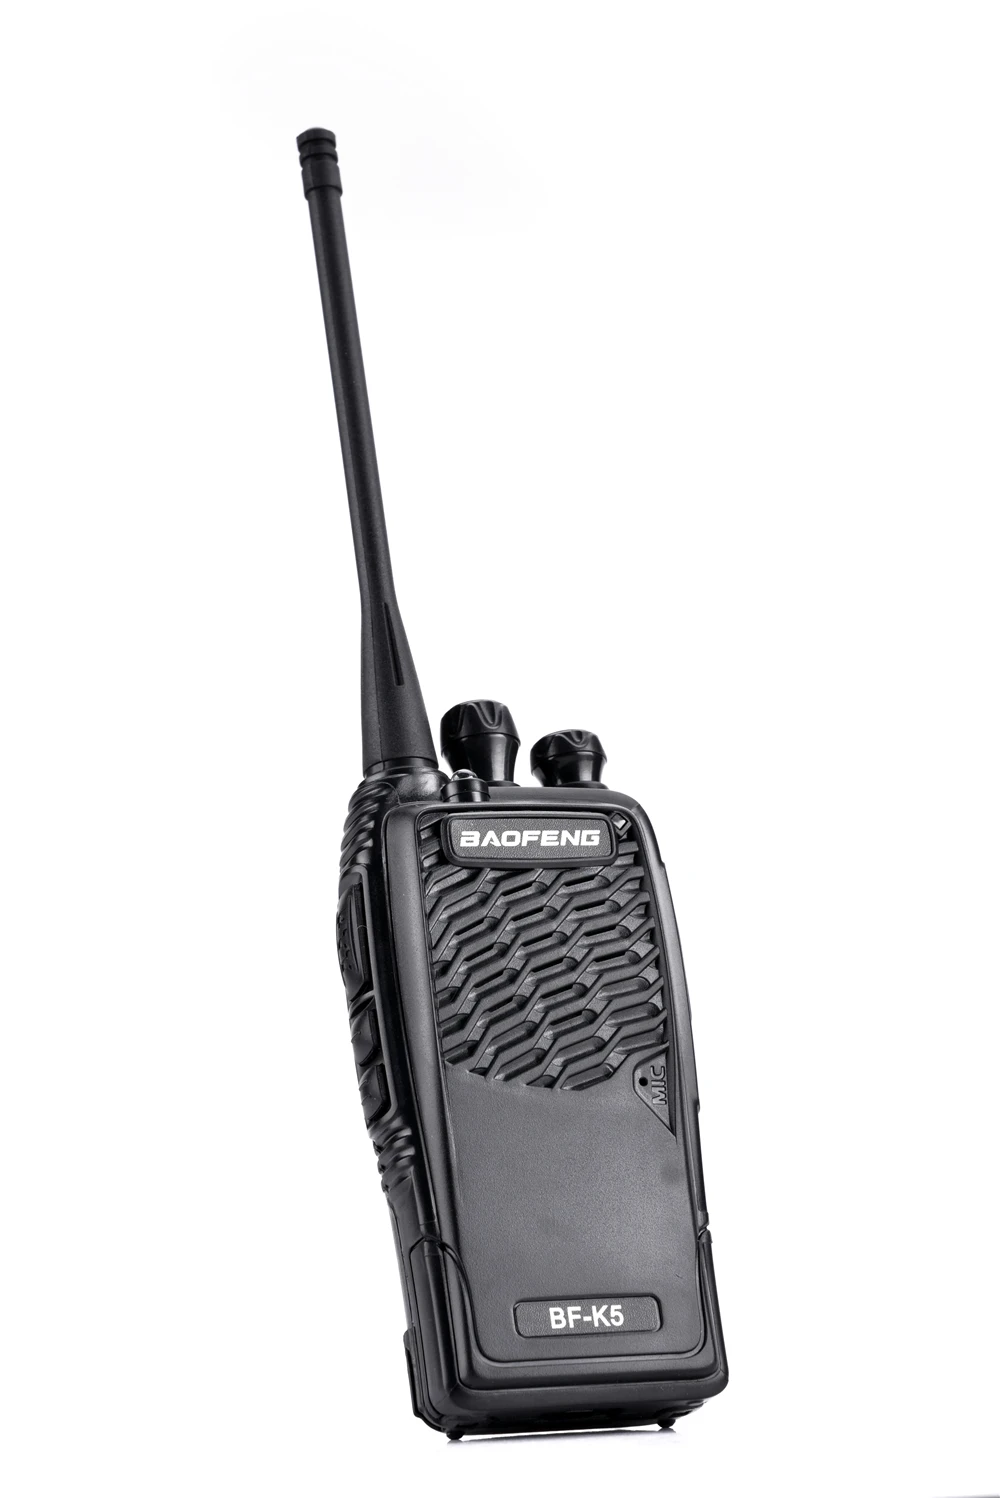 100% Оригинальный Baofeng иди и болтай Walkie Talkie “иди и BF-K5 радиолюбителей радио Comunicador радиолюбителей Baofeng Uv-82 Dmr радио антенна Vhf радио Cb радио